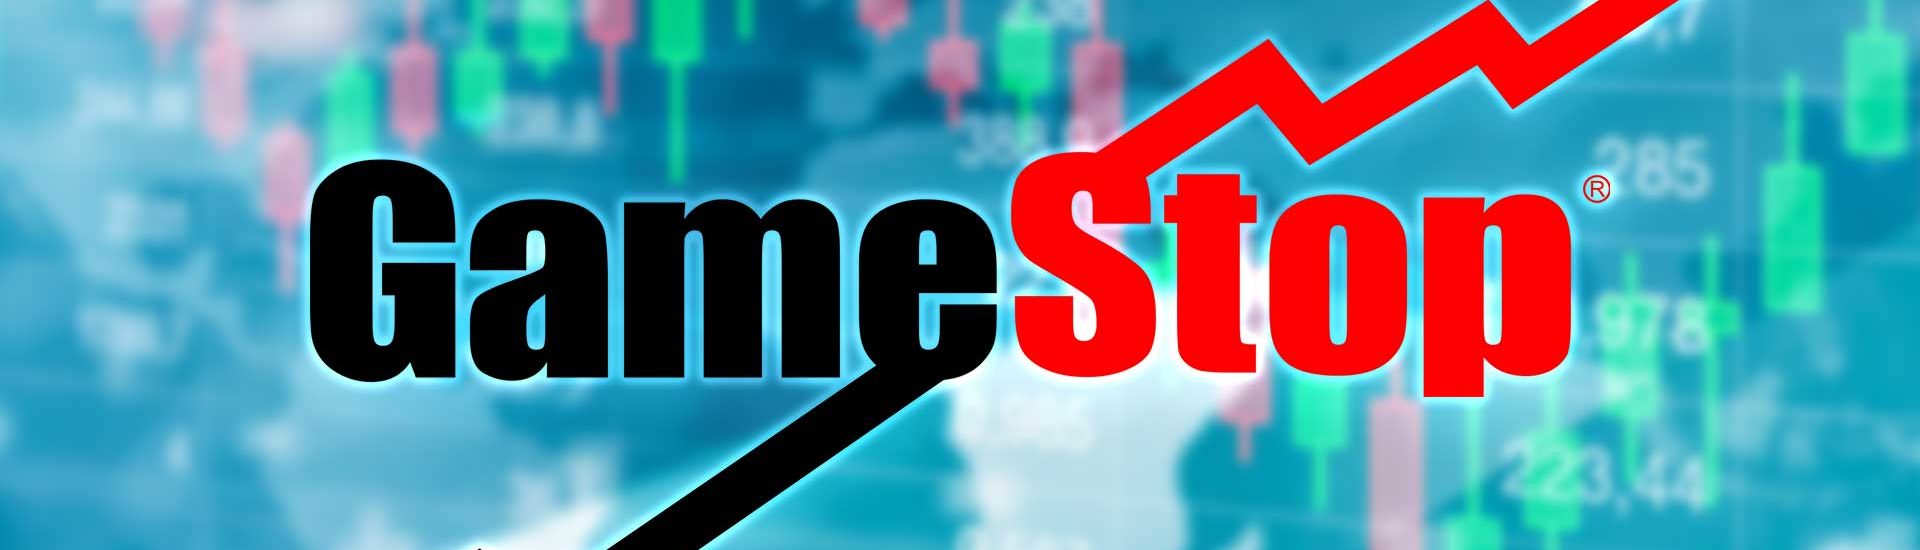 GameStop verdient über 1 Milliarde US-Dollar durch Aktienverkauf